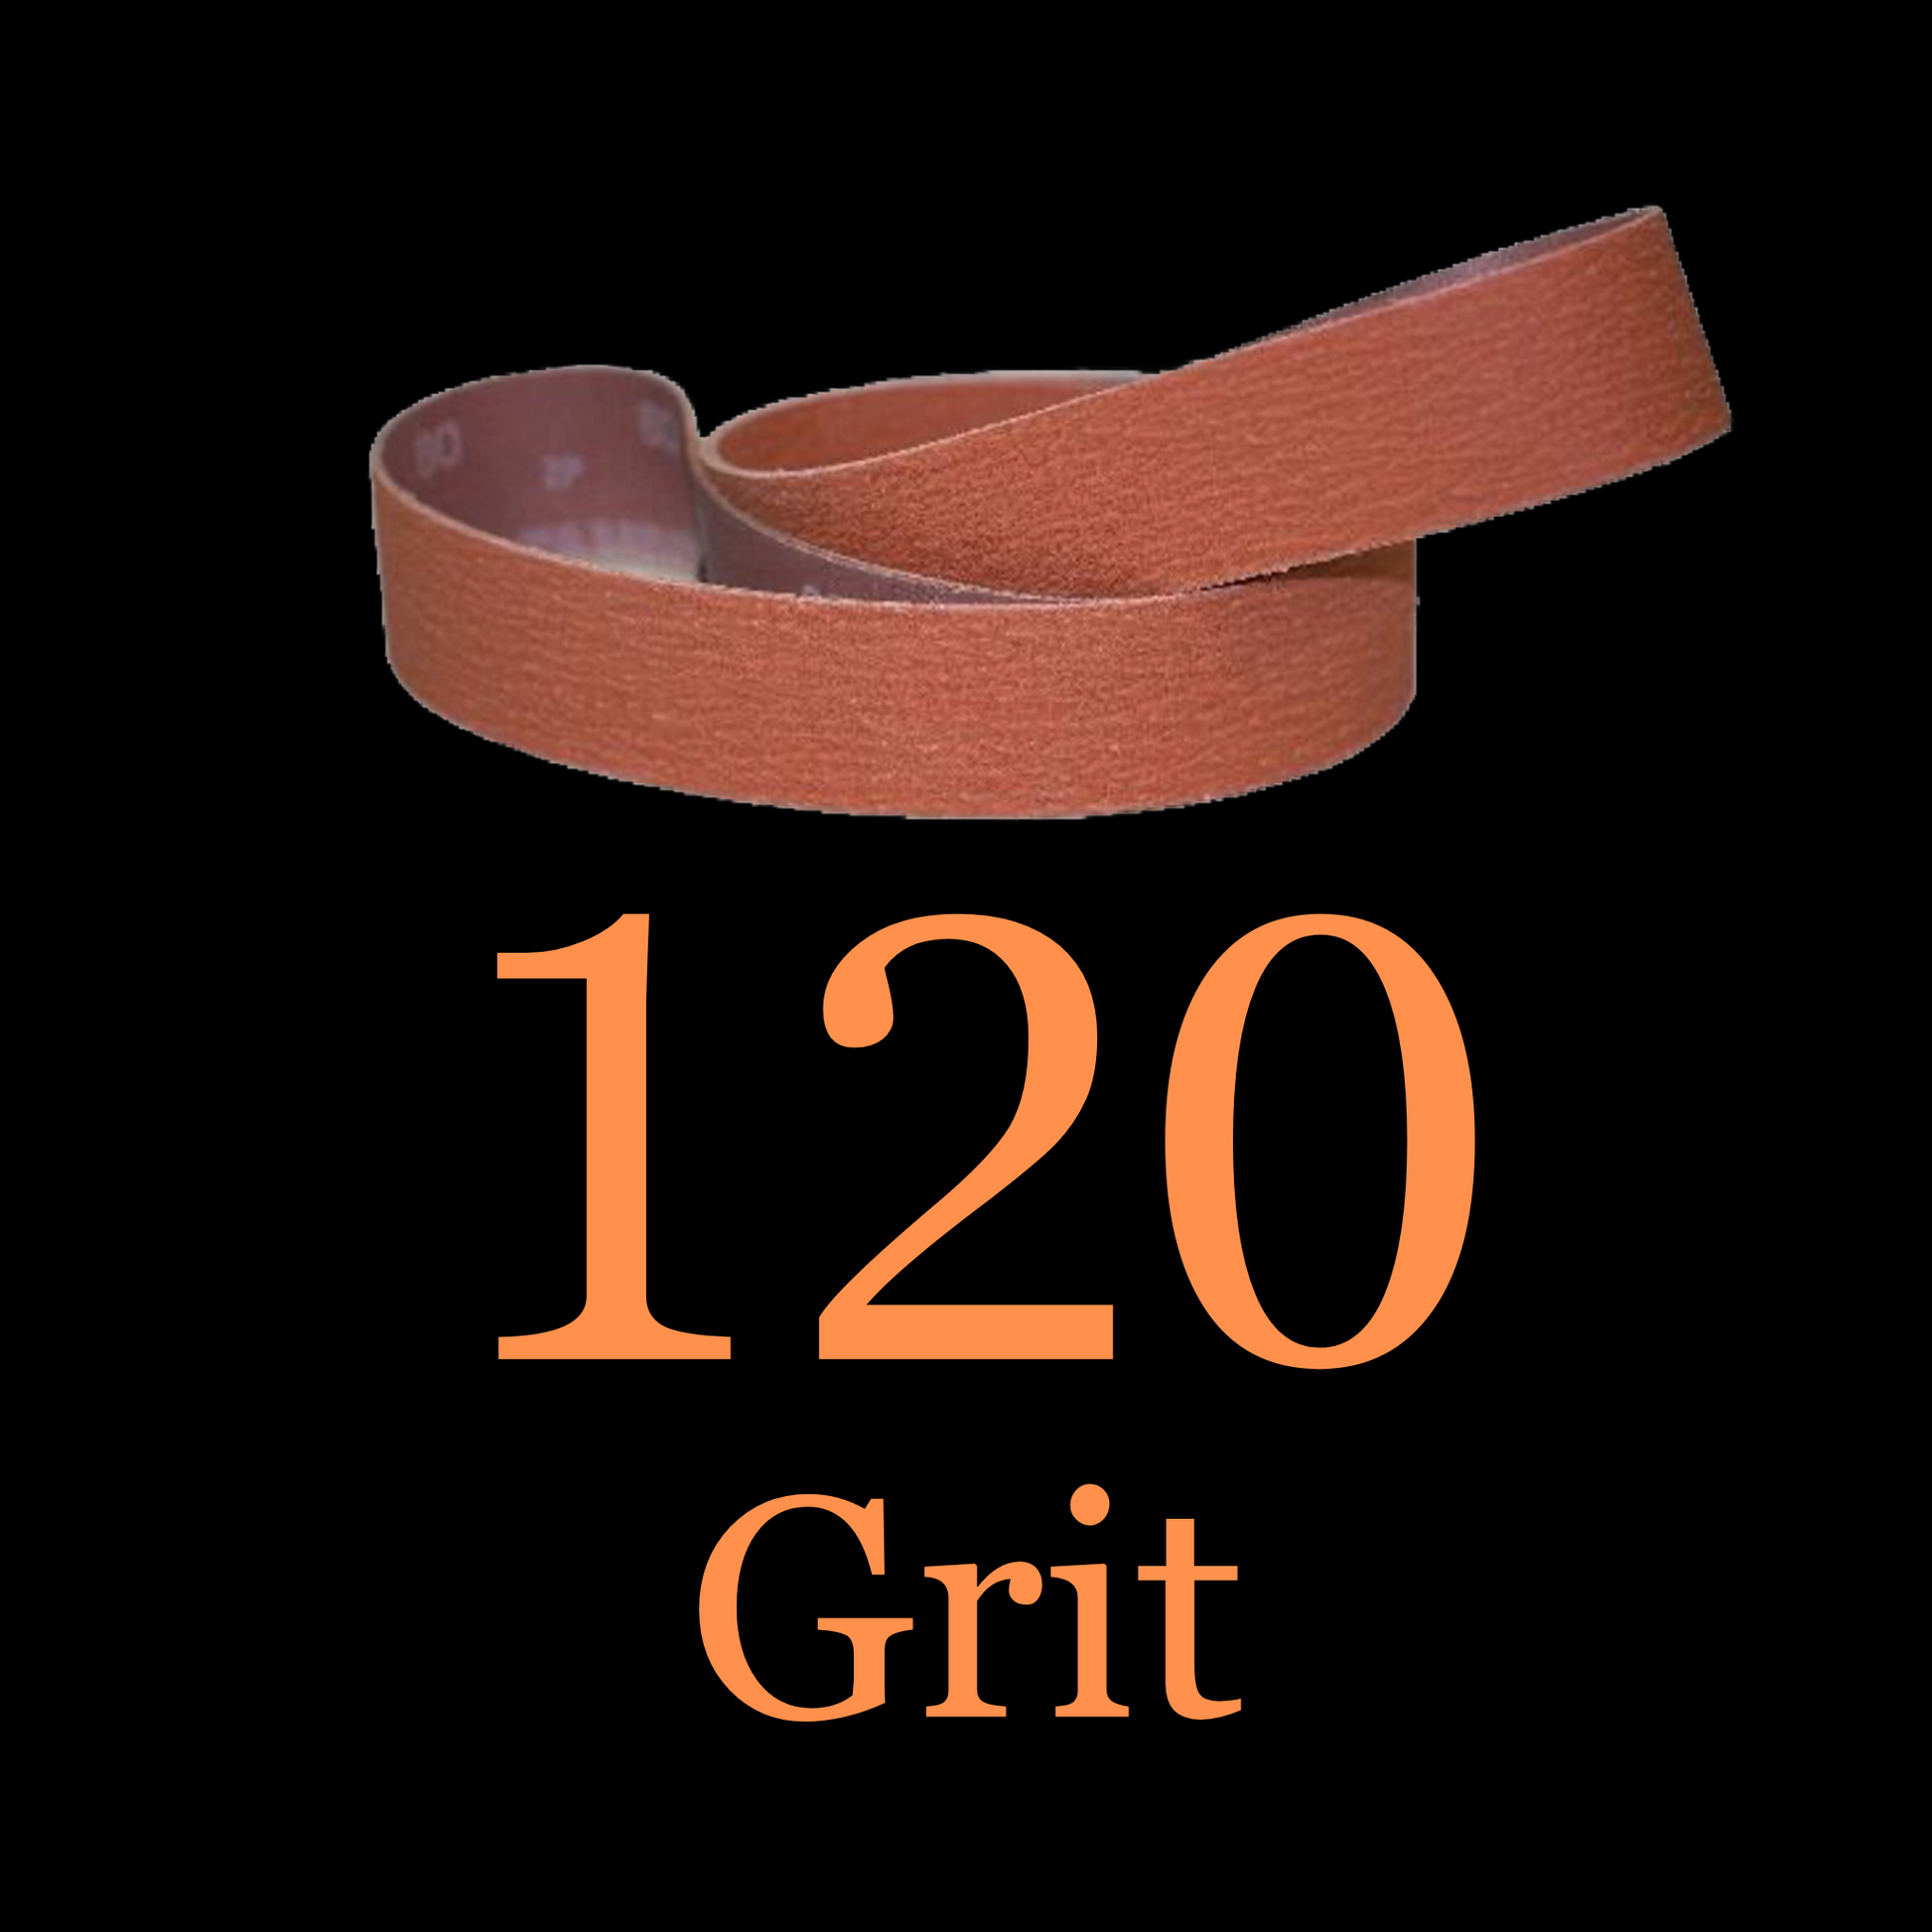 1” x 42” Ceramic Blaze Grinder Belt 120 Grit